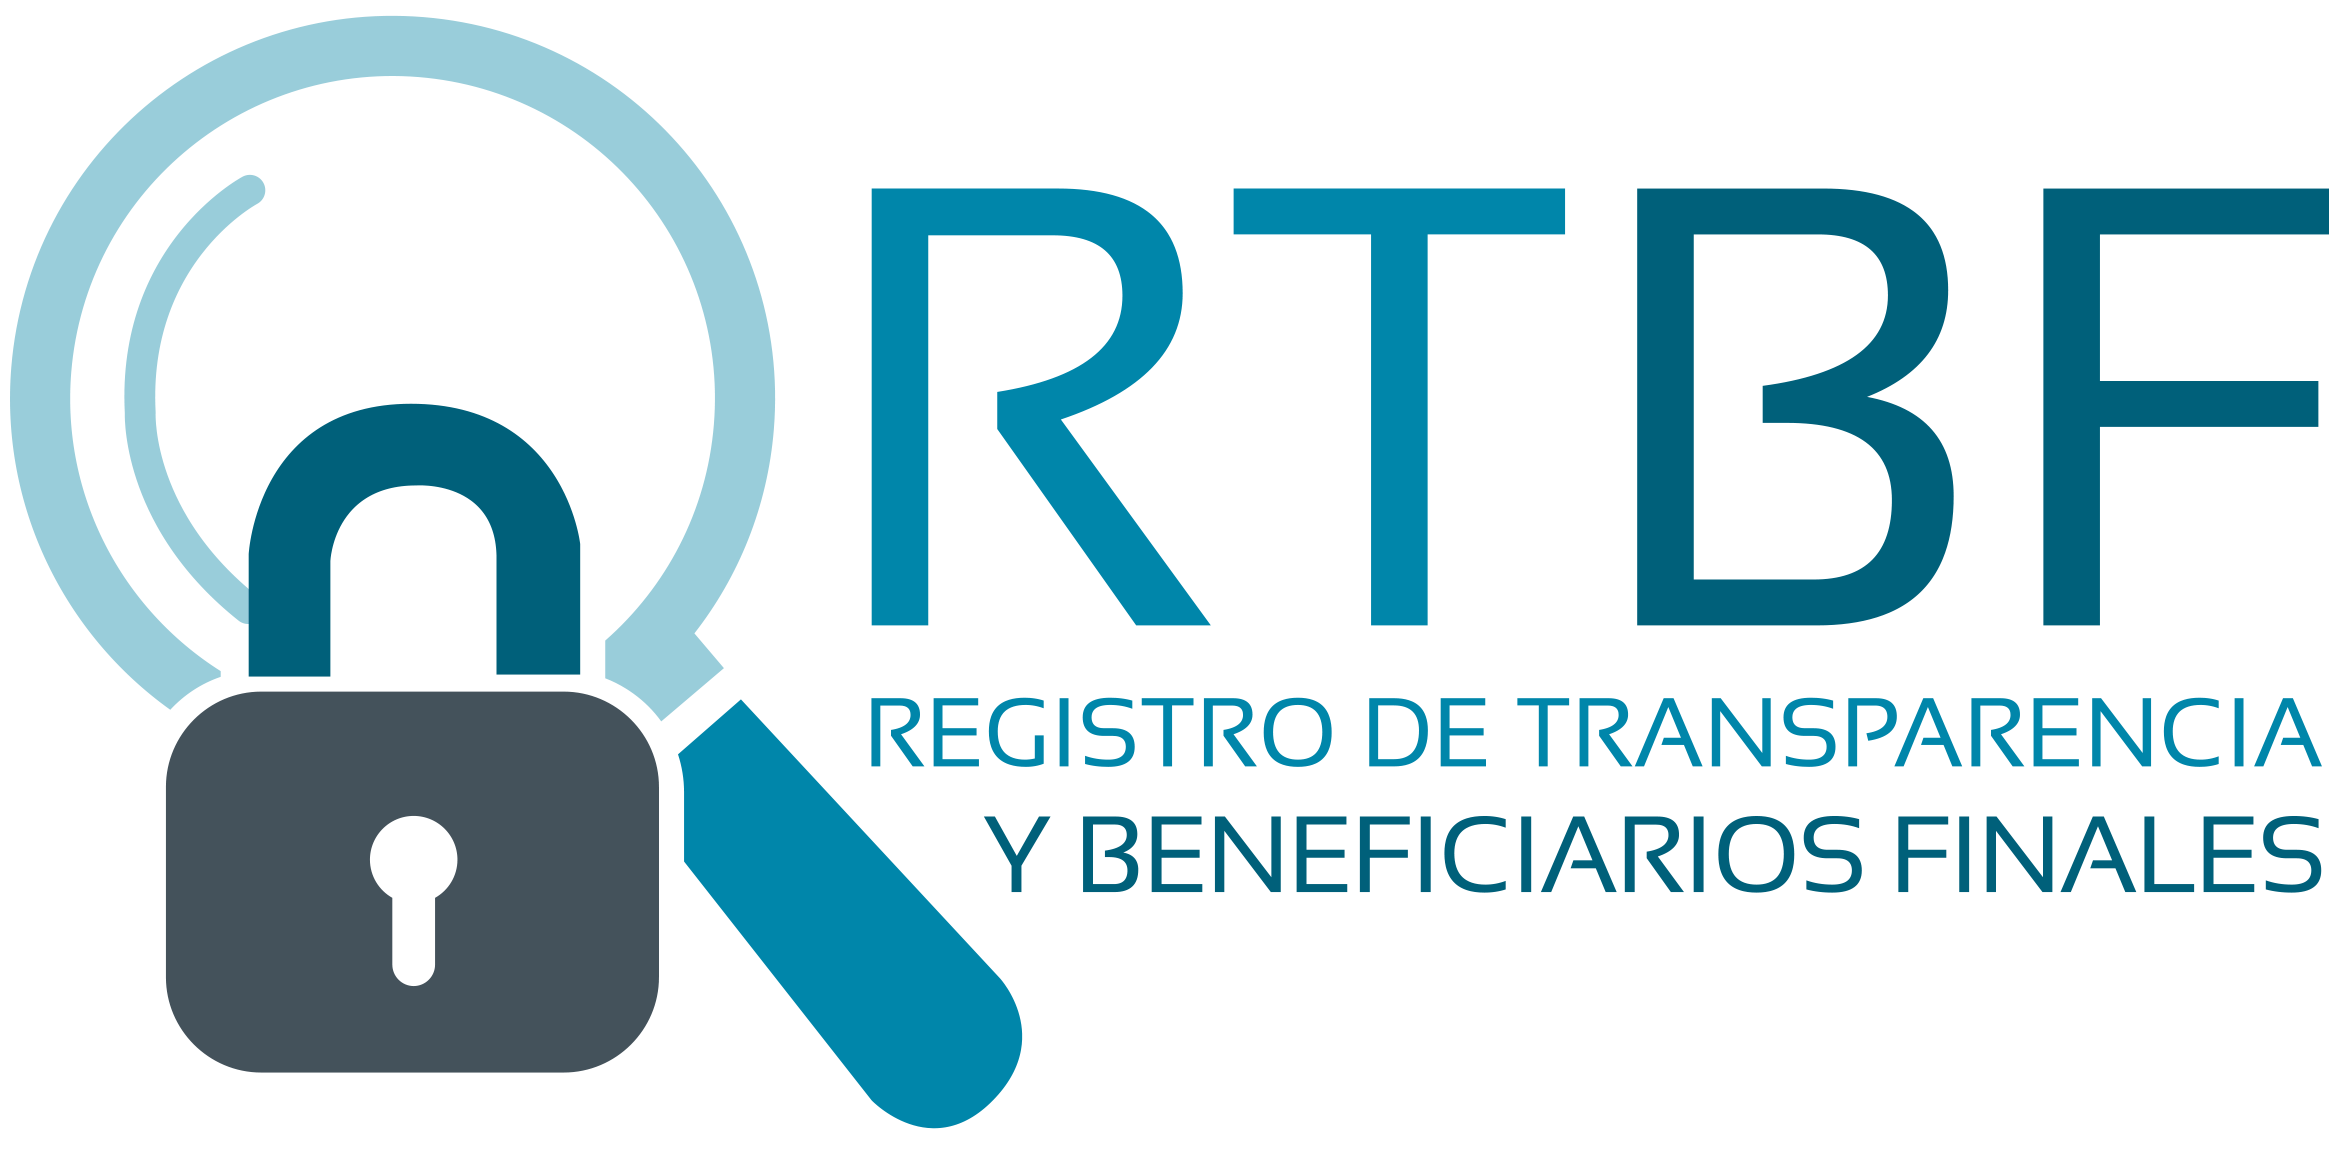 RTBF Registro de Transparencia y Beneficiarios Finales